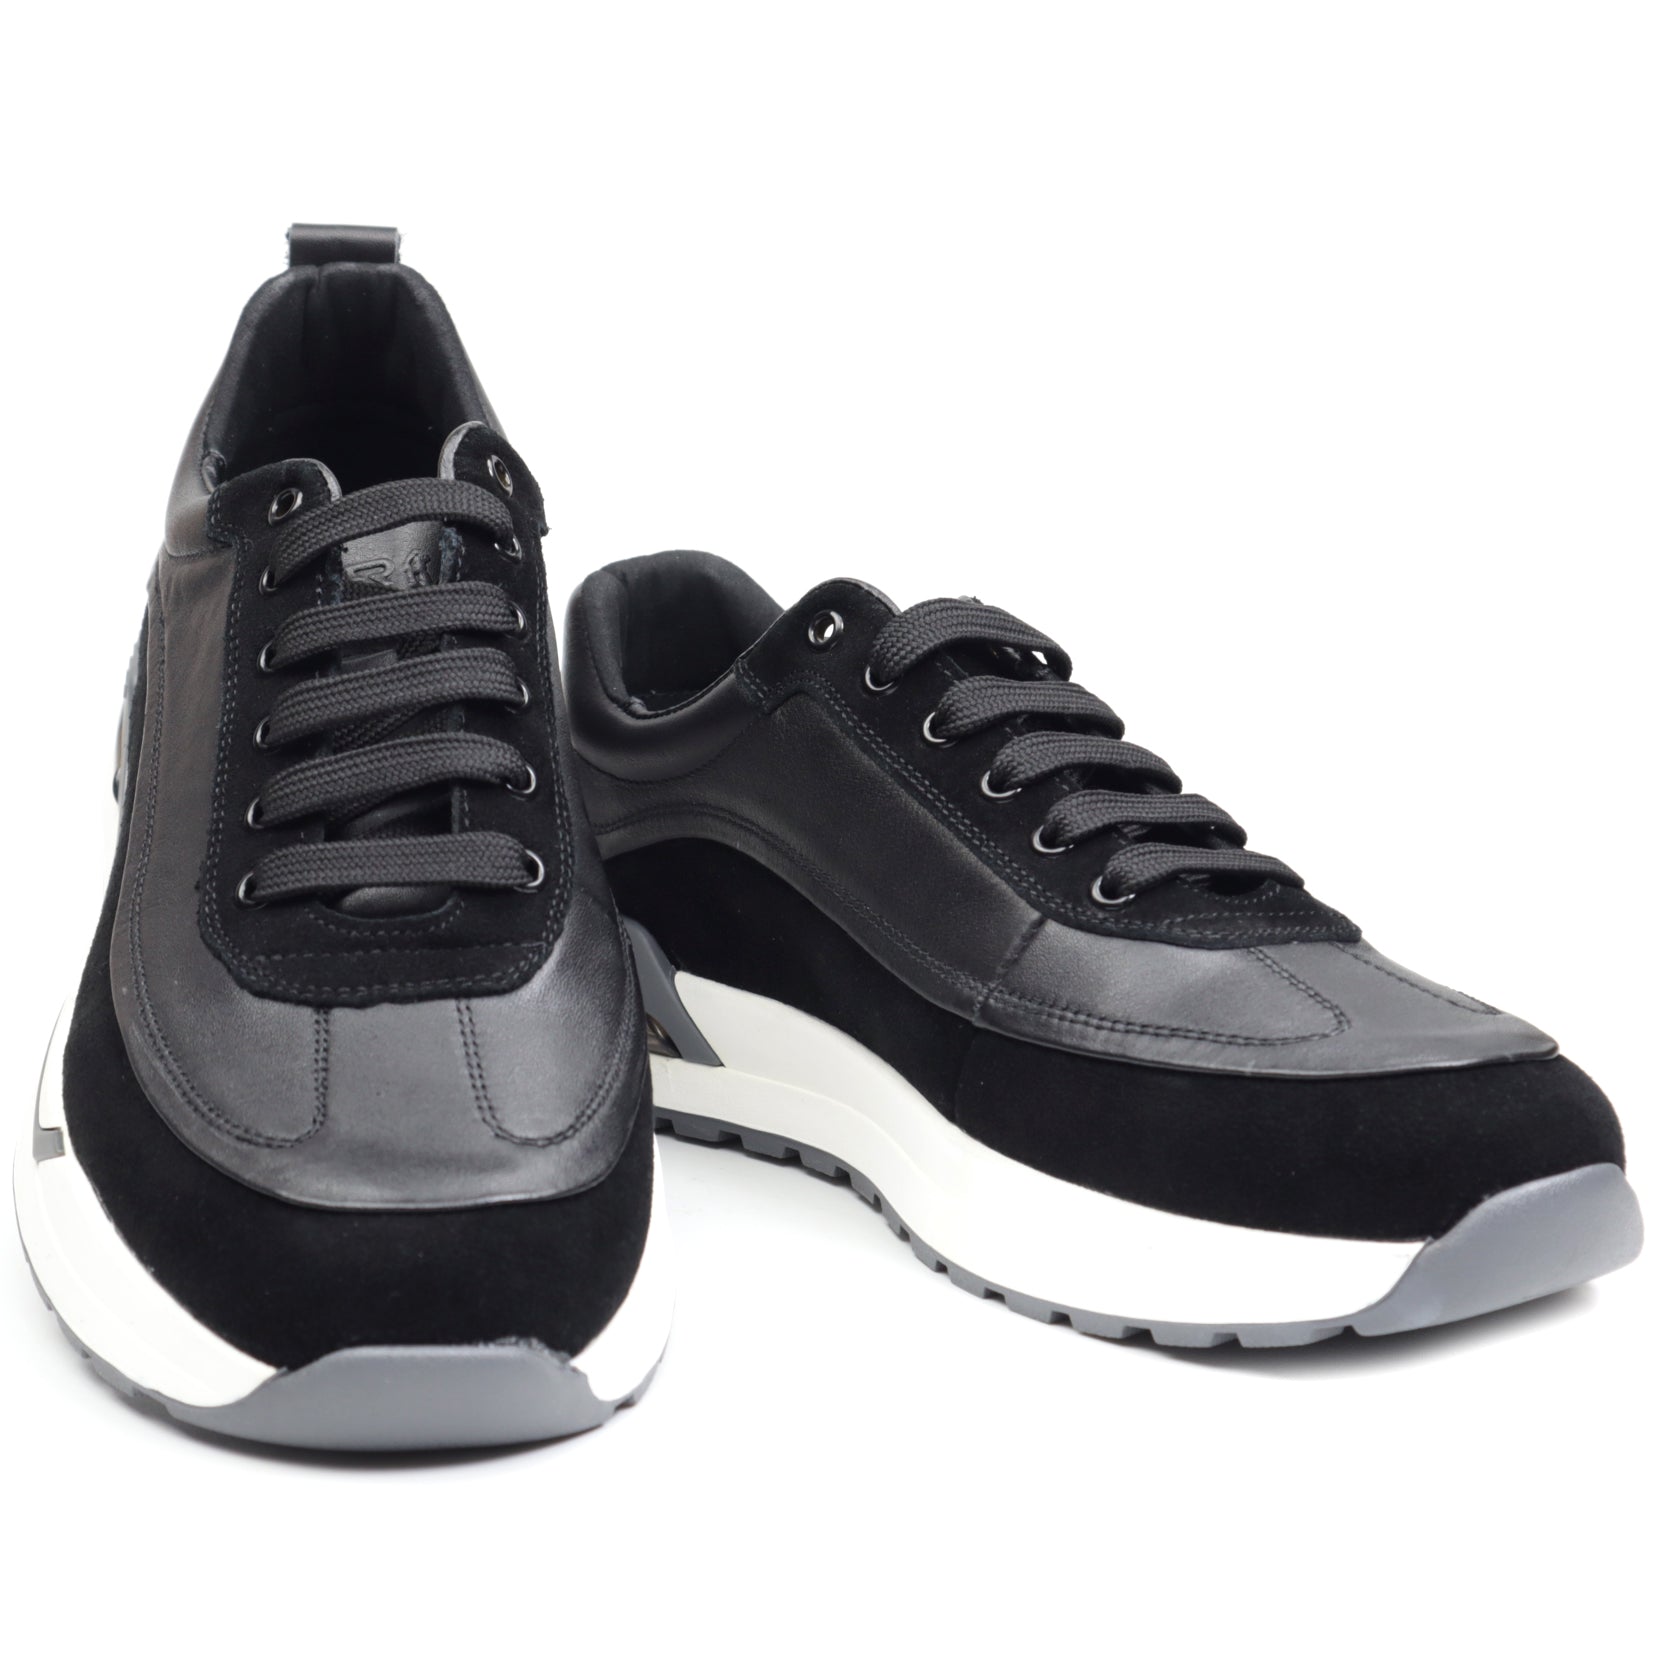 Otter Sneakers barbati B1RE40004 01 Z negru IB2496-NG